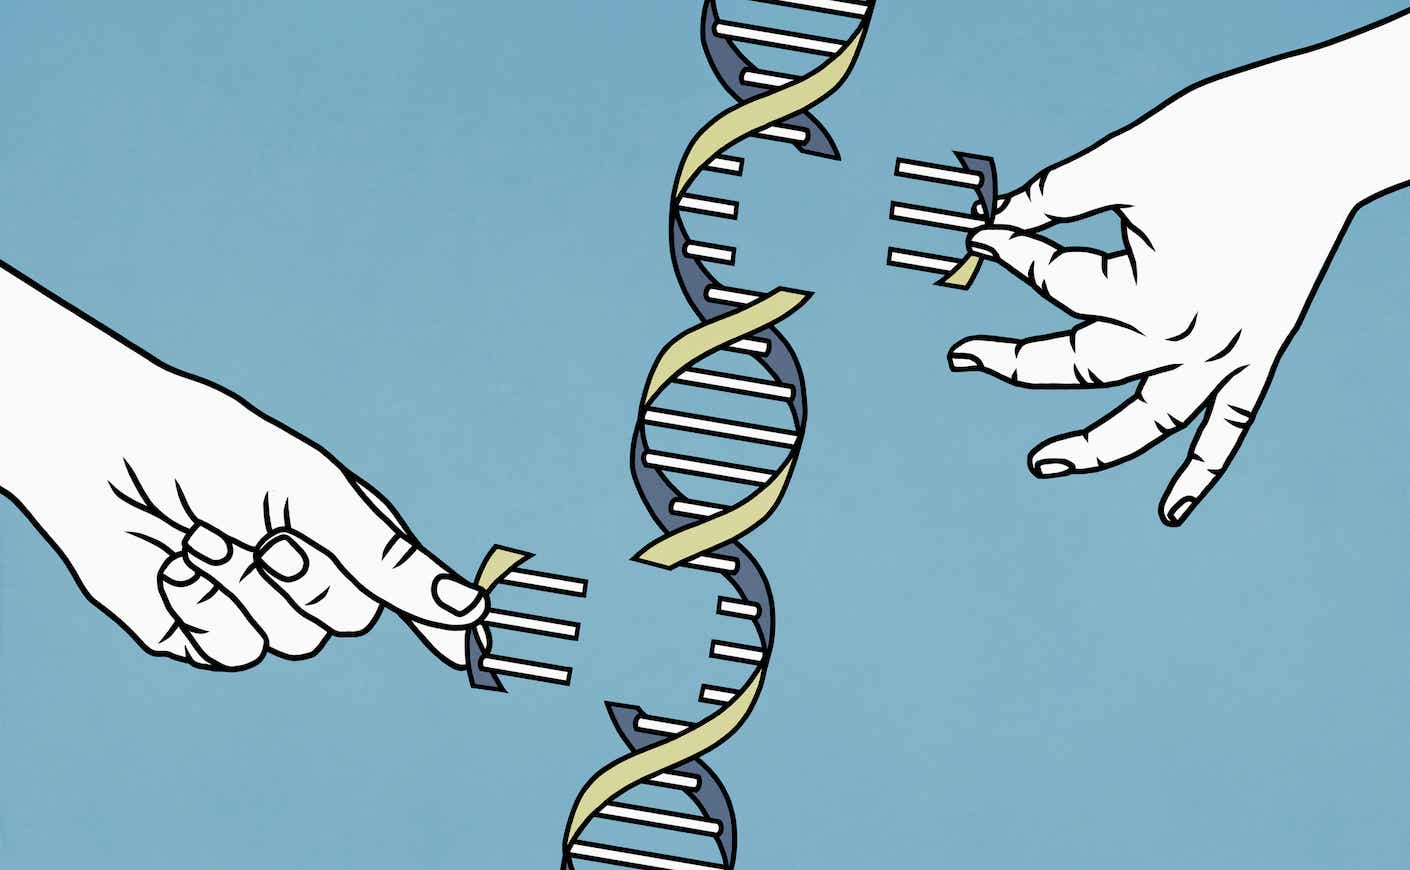 Illustration hands pulling apart DNA